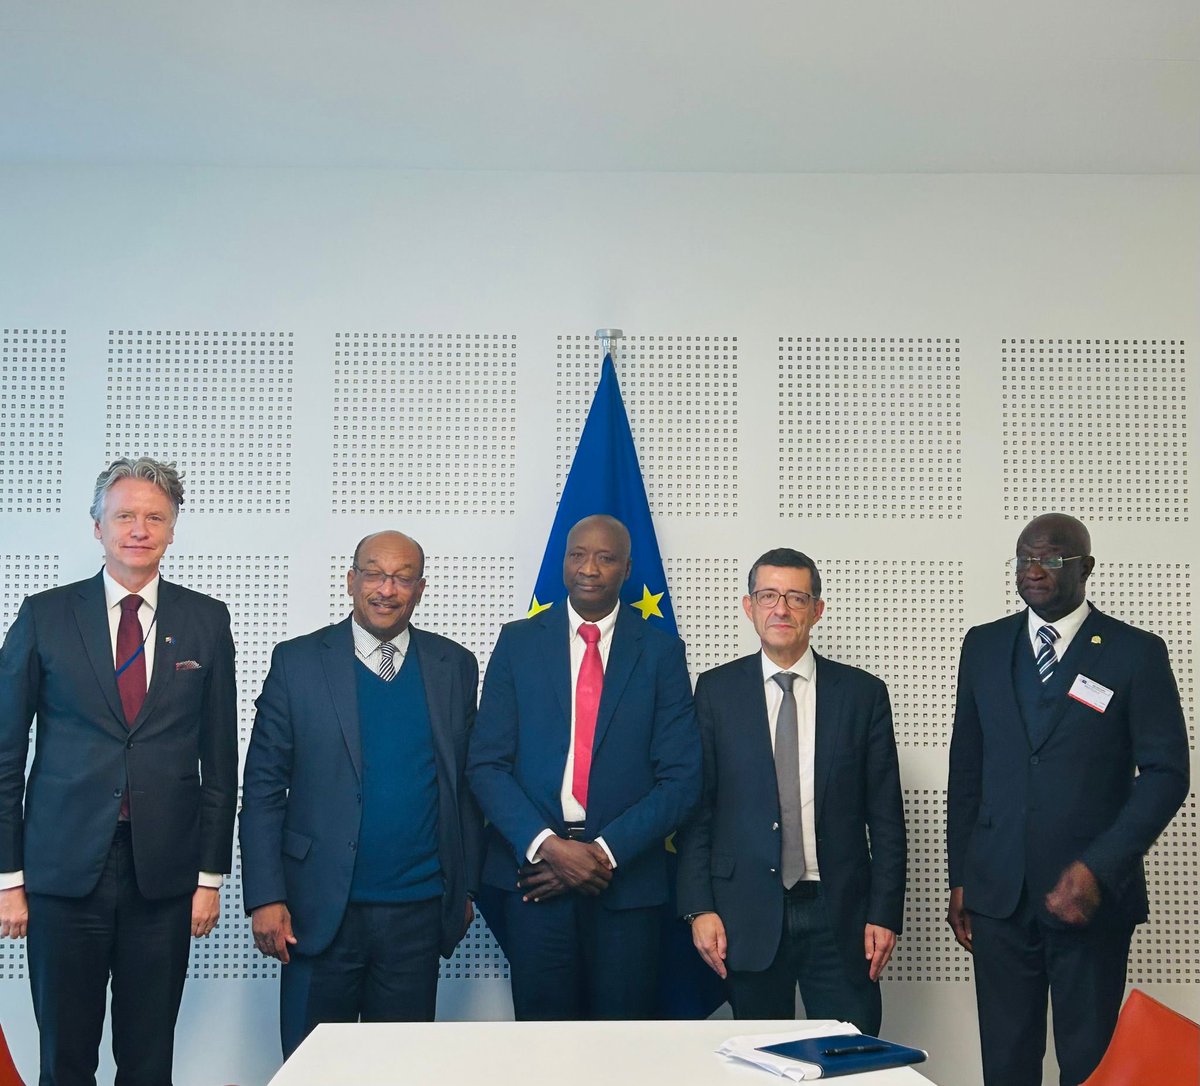 Aujourd’hui j'ai reçu le ministre de la Pêche de Guinée-Bissau, Mario Mussante, au Parlement européen à Bruxelles. Avec mon VP @max_orville, nous avons analysé avec la délégation guinéenne le sujet de la renégociation de l'accord de pêche UE-Guinée-Bissau. @EP_Development